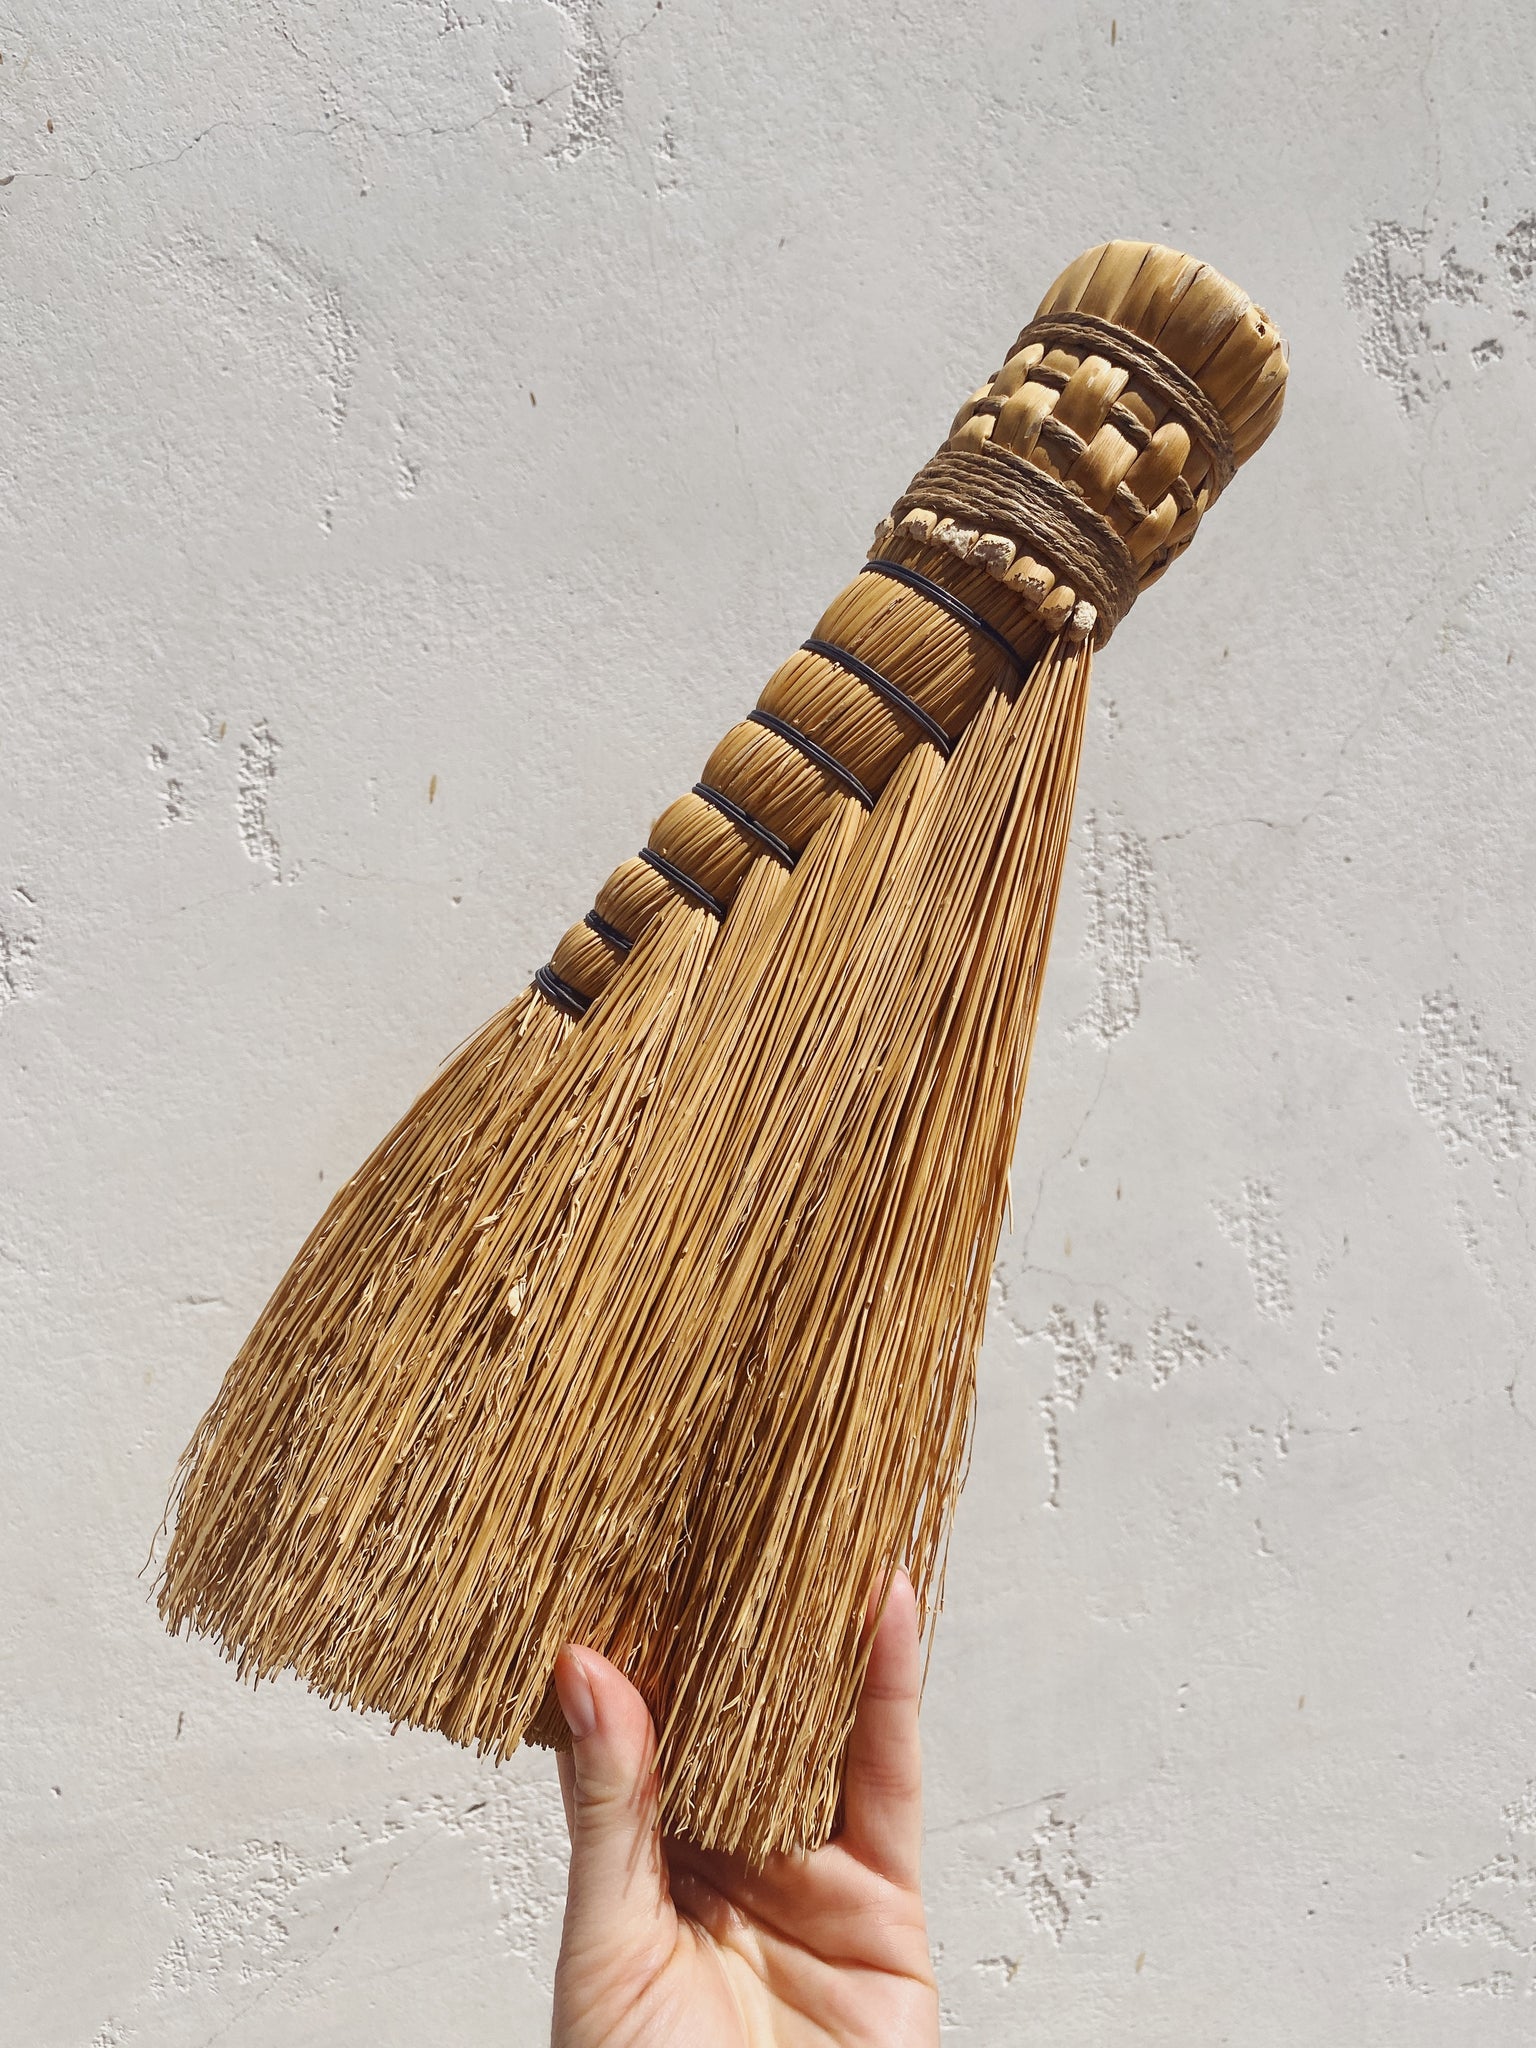 vintage whisk broom